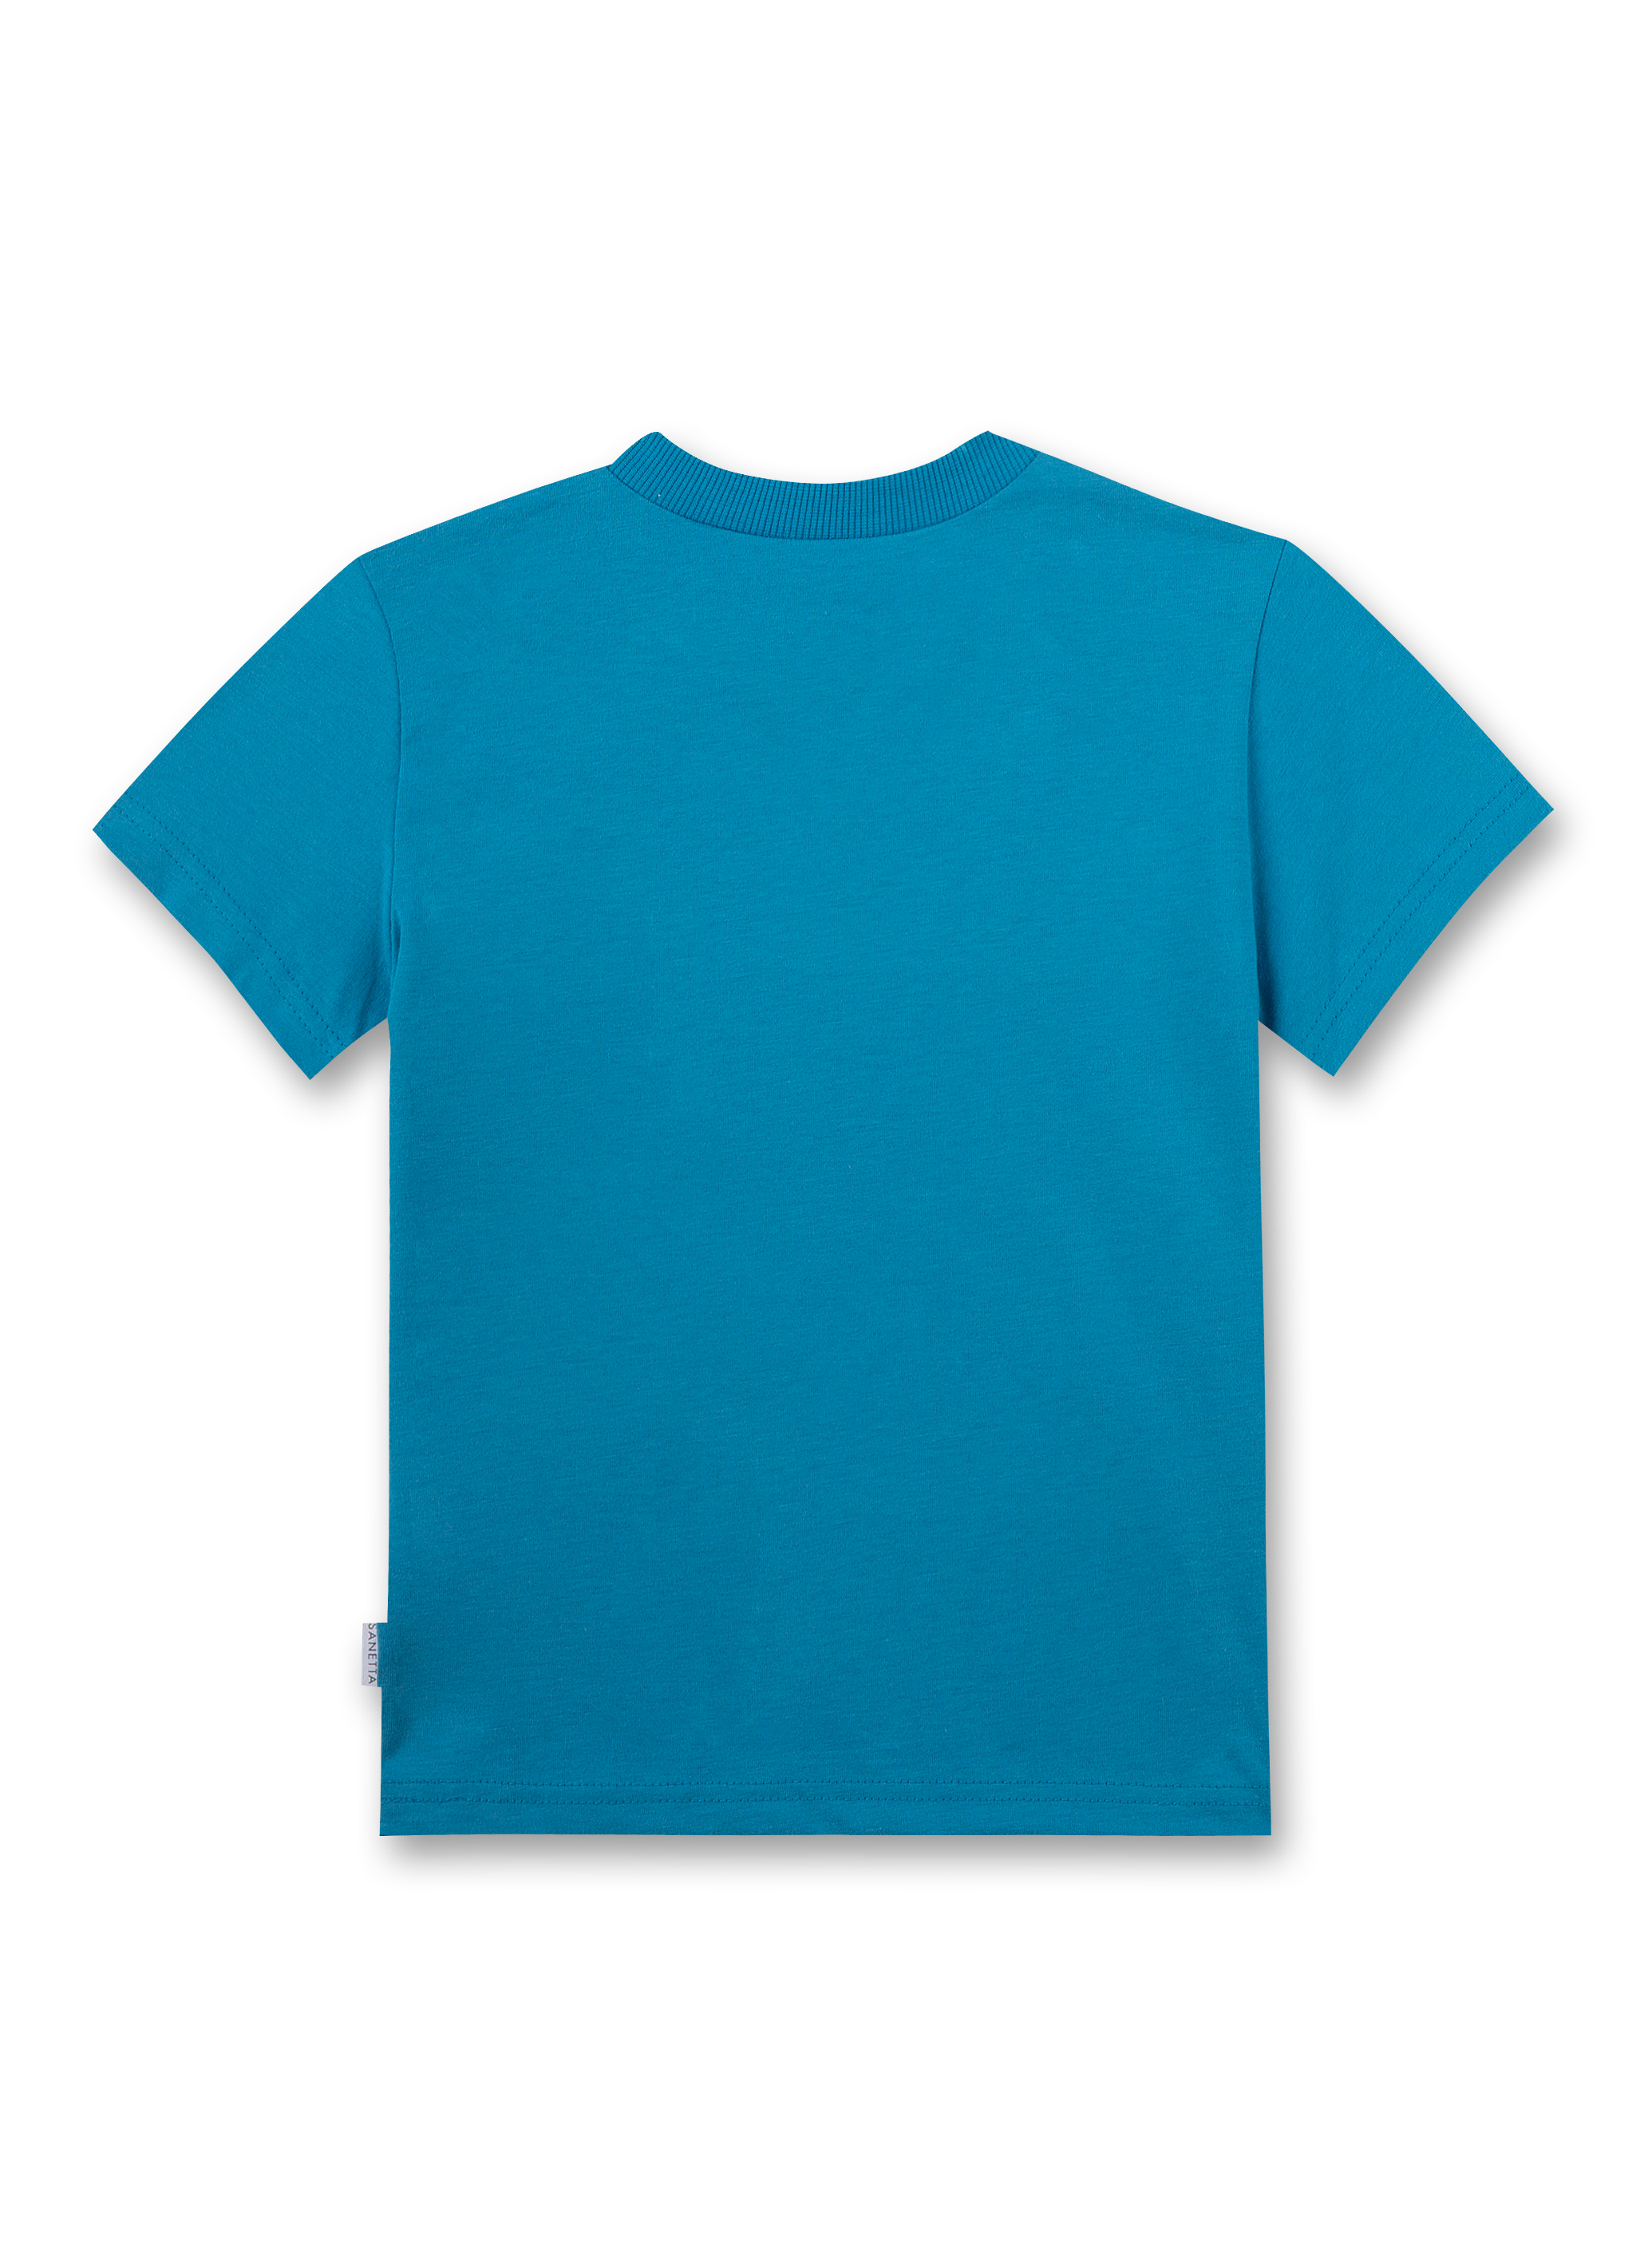 Jungen T-Shirt Blau